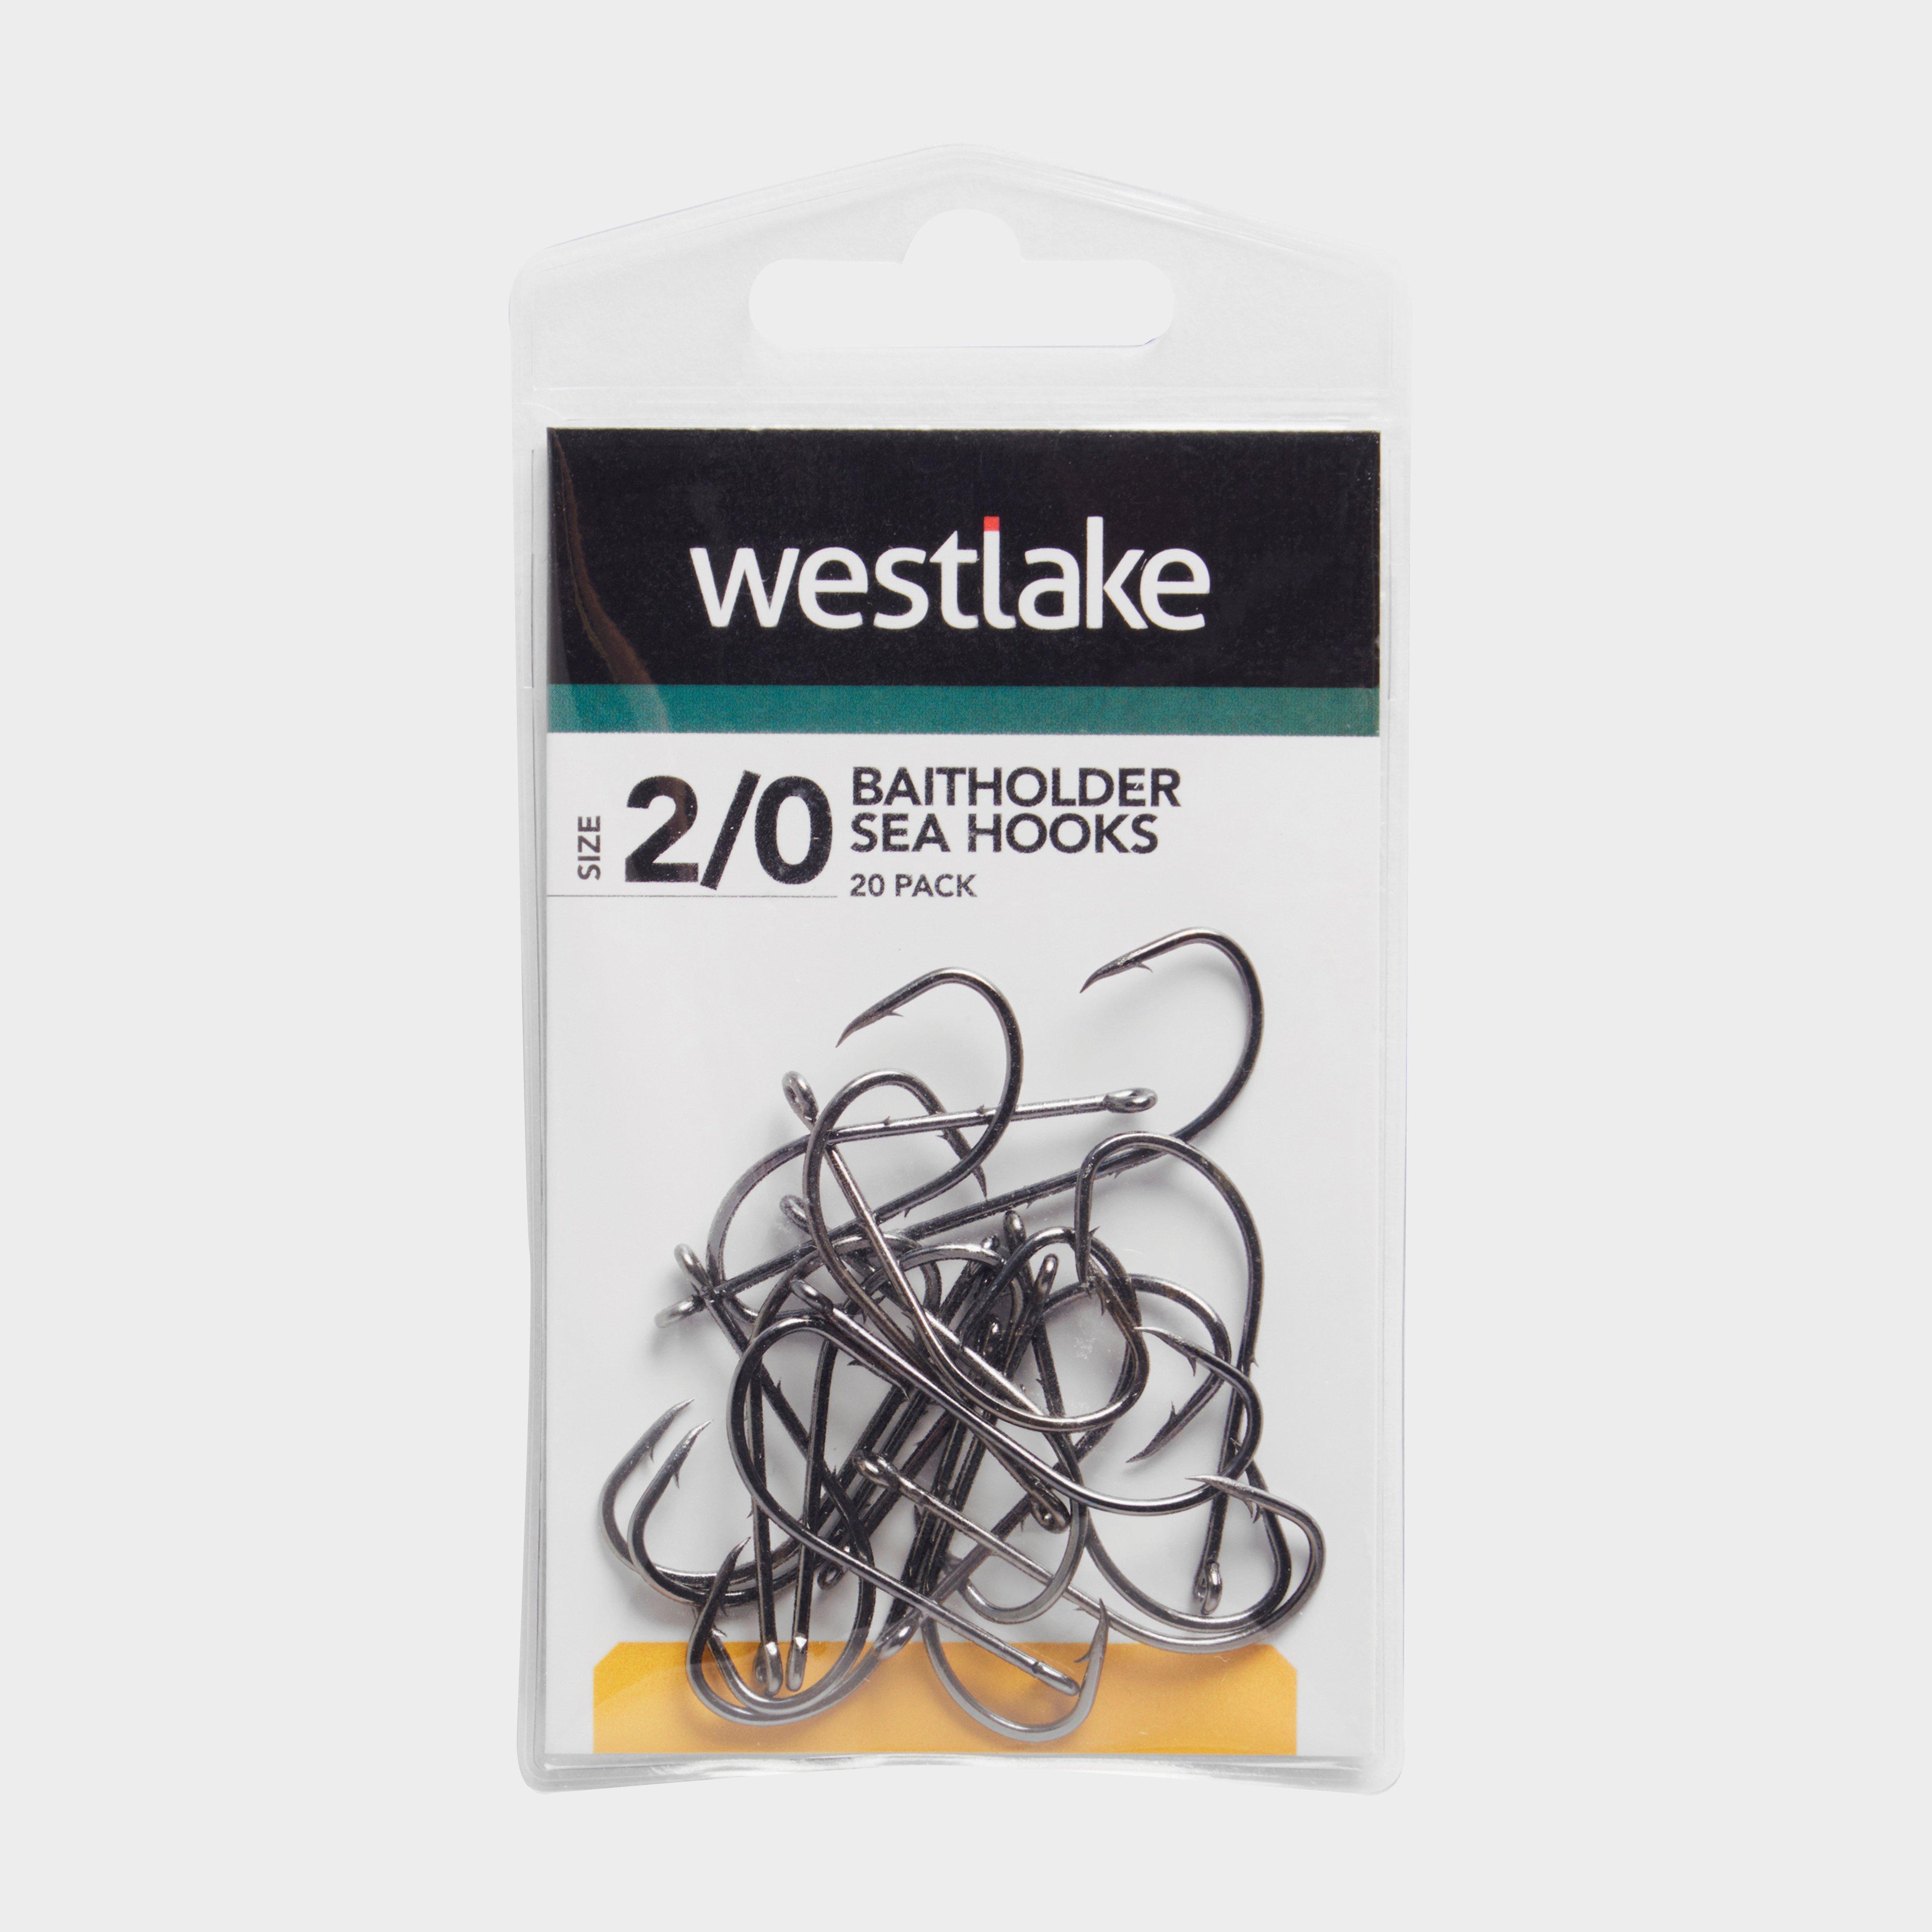 Westlake Baitholder Sea Hooks (size 2/0) - Black/sz  Black/sz